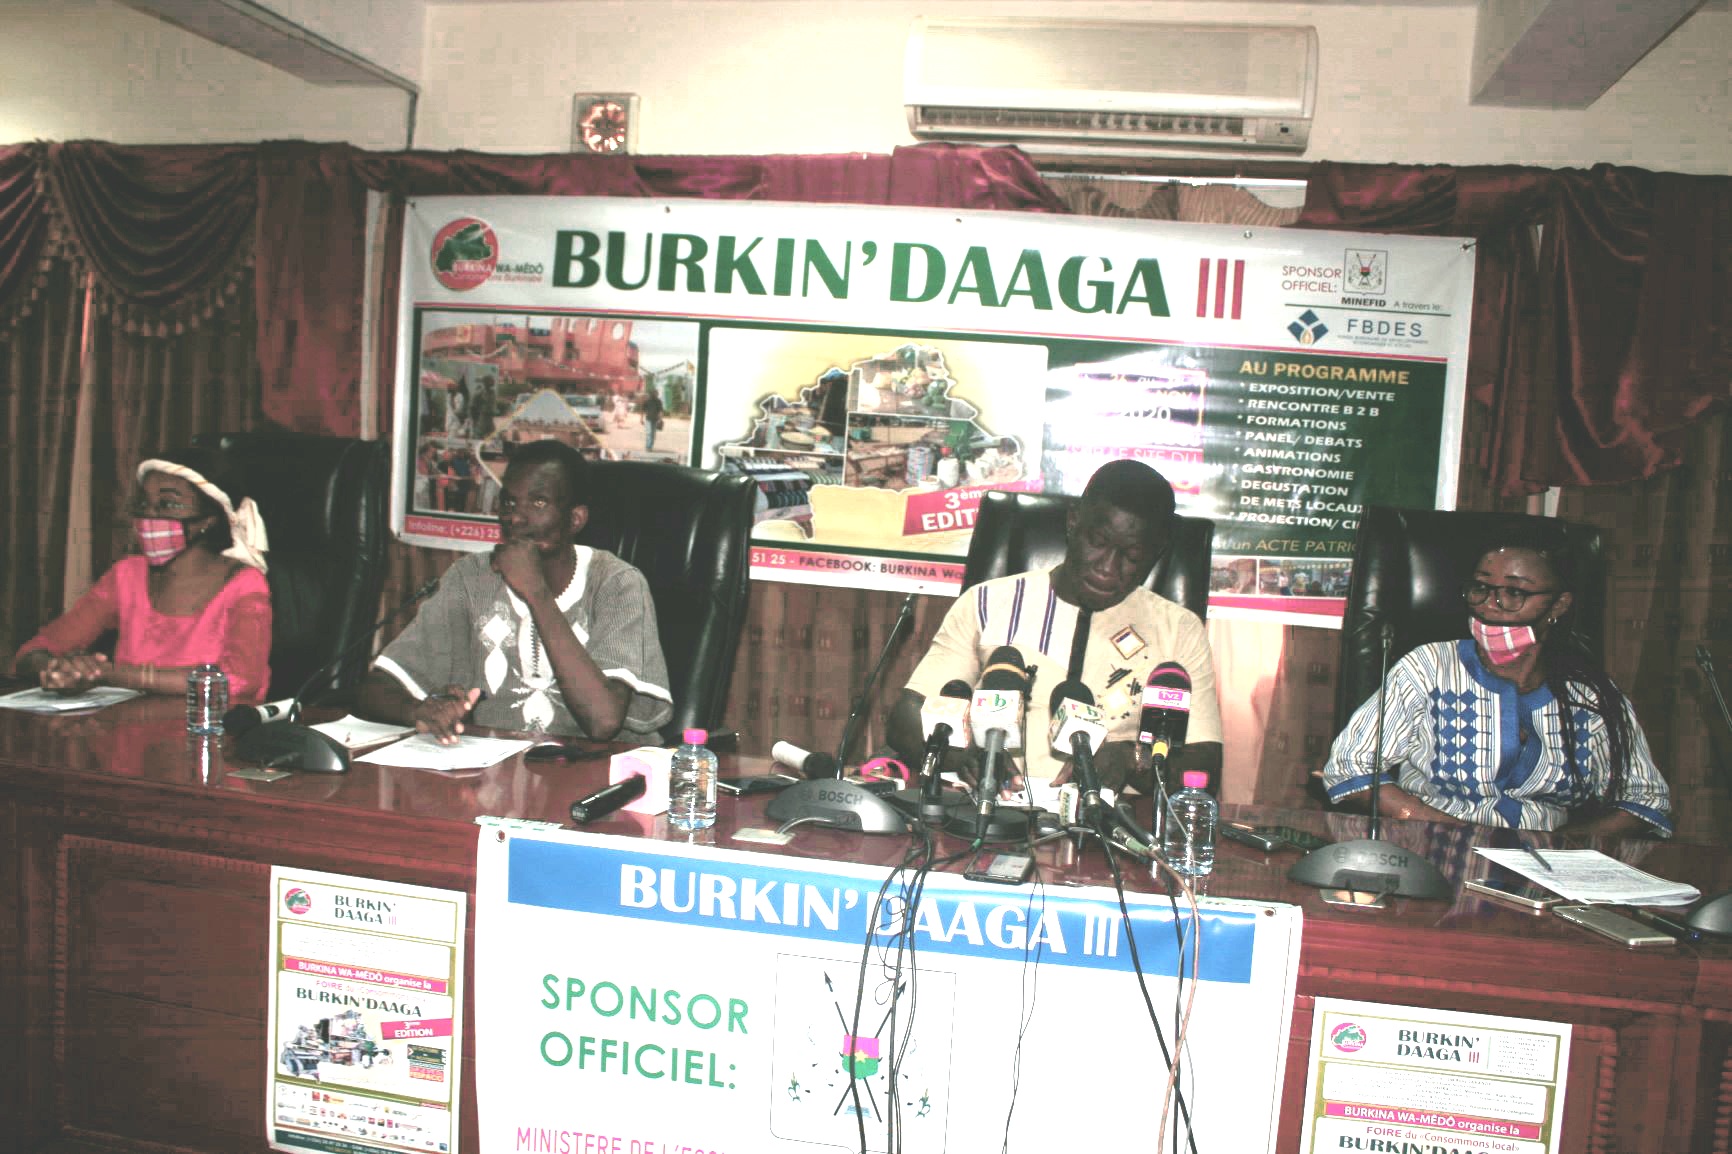  3è édition de “Burkin’Daaga”: C’est du 26 octobre au 1er novembre 2020 au FESPACO